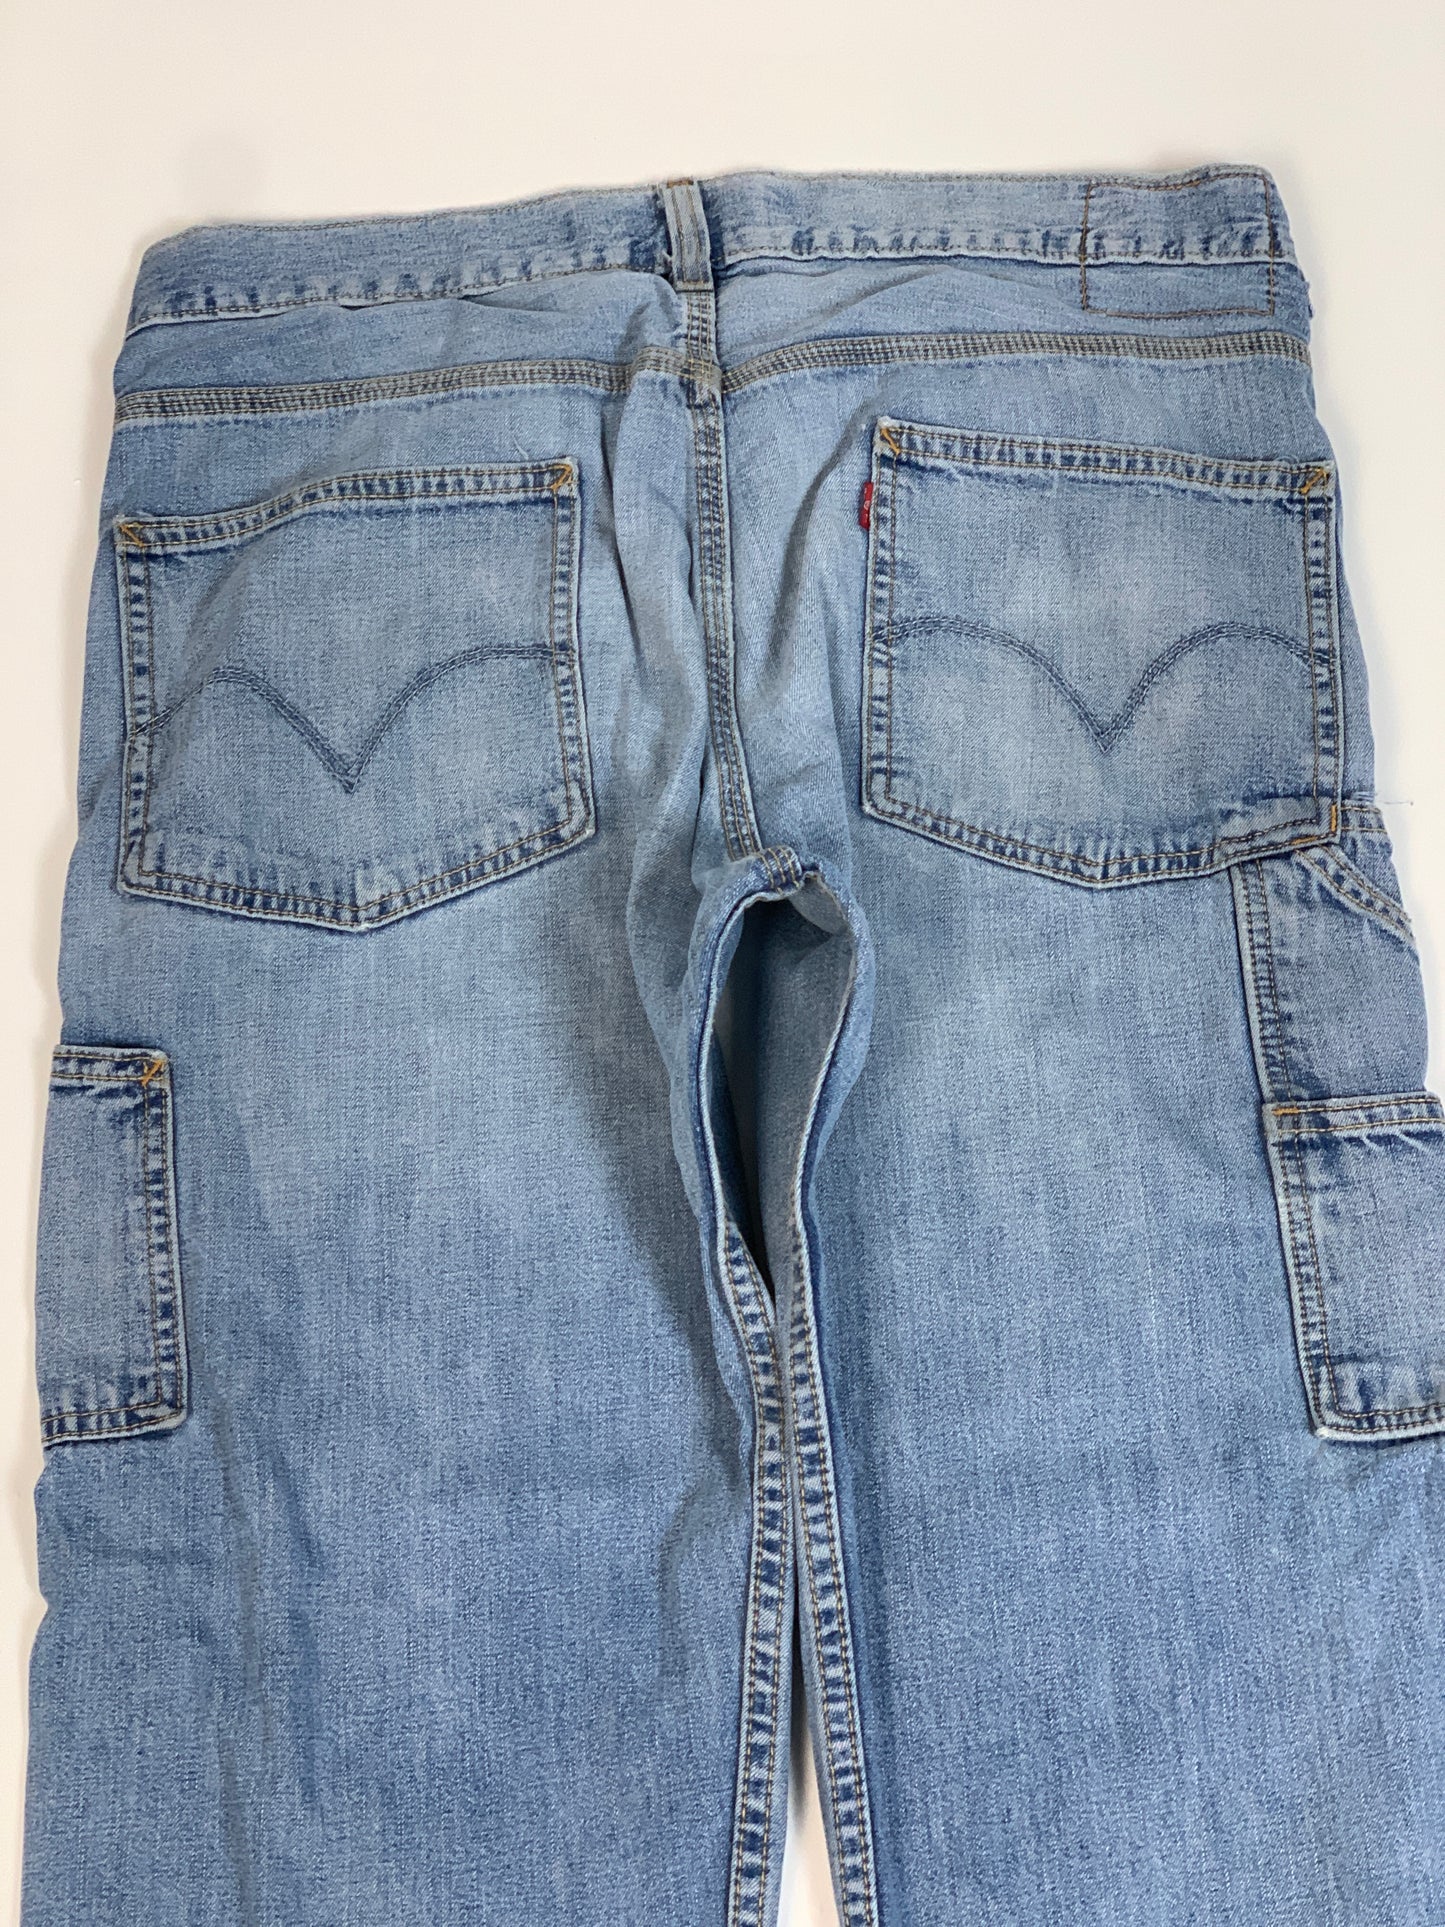 Levis Carpenter Vintage Jeans - 36